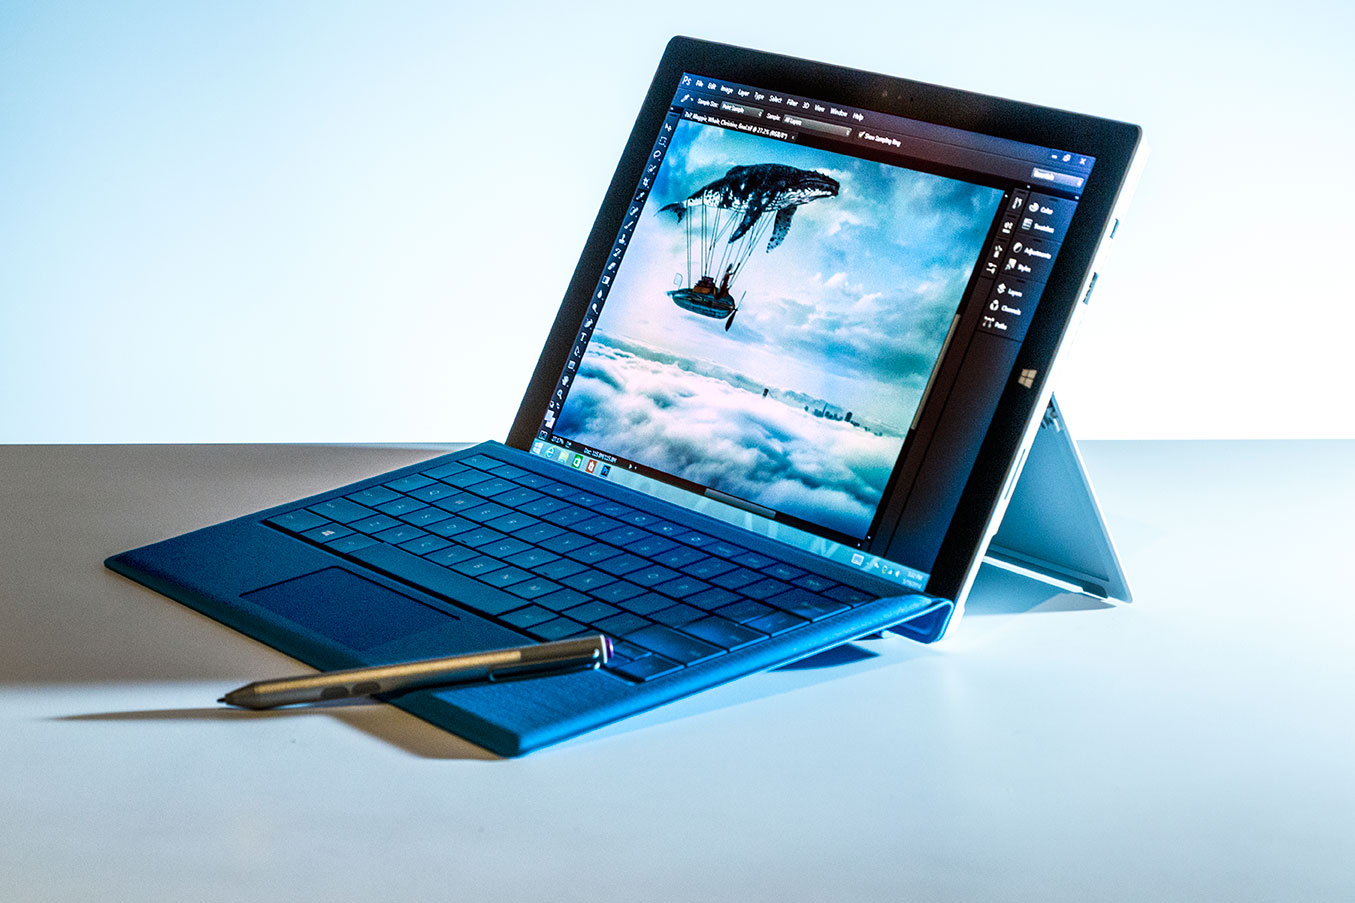 Microsoft sender nok en gang ut en fastvareoppdatering som skal fikse Surface Pro 3s batteriproblemer.